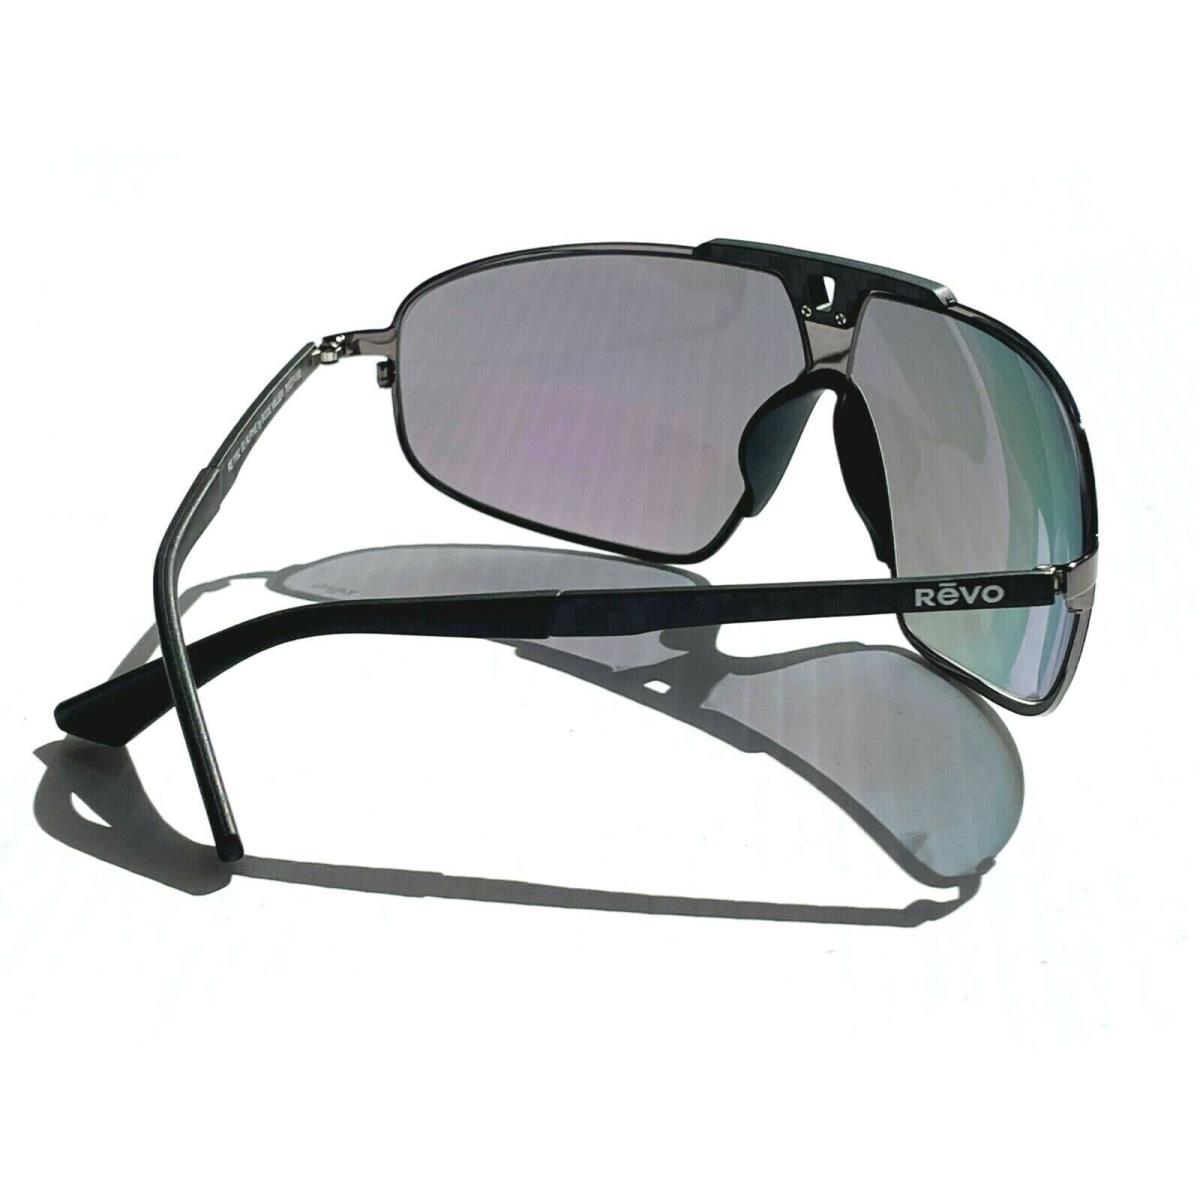 Revo sunglasses Alpine - Gunmetal Frame, Evergreen Lens